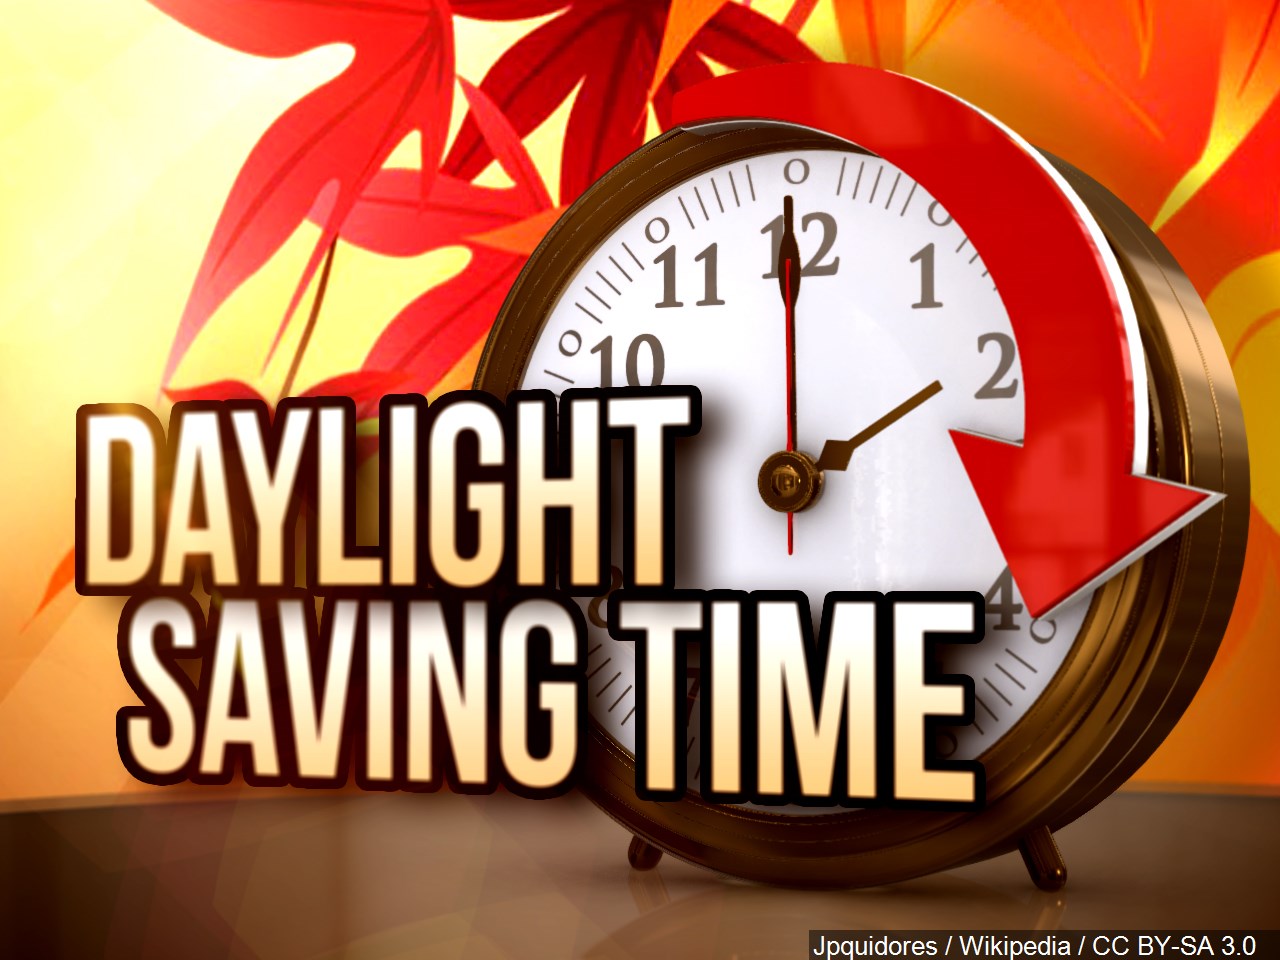 Daylight saving time - Wikipedia